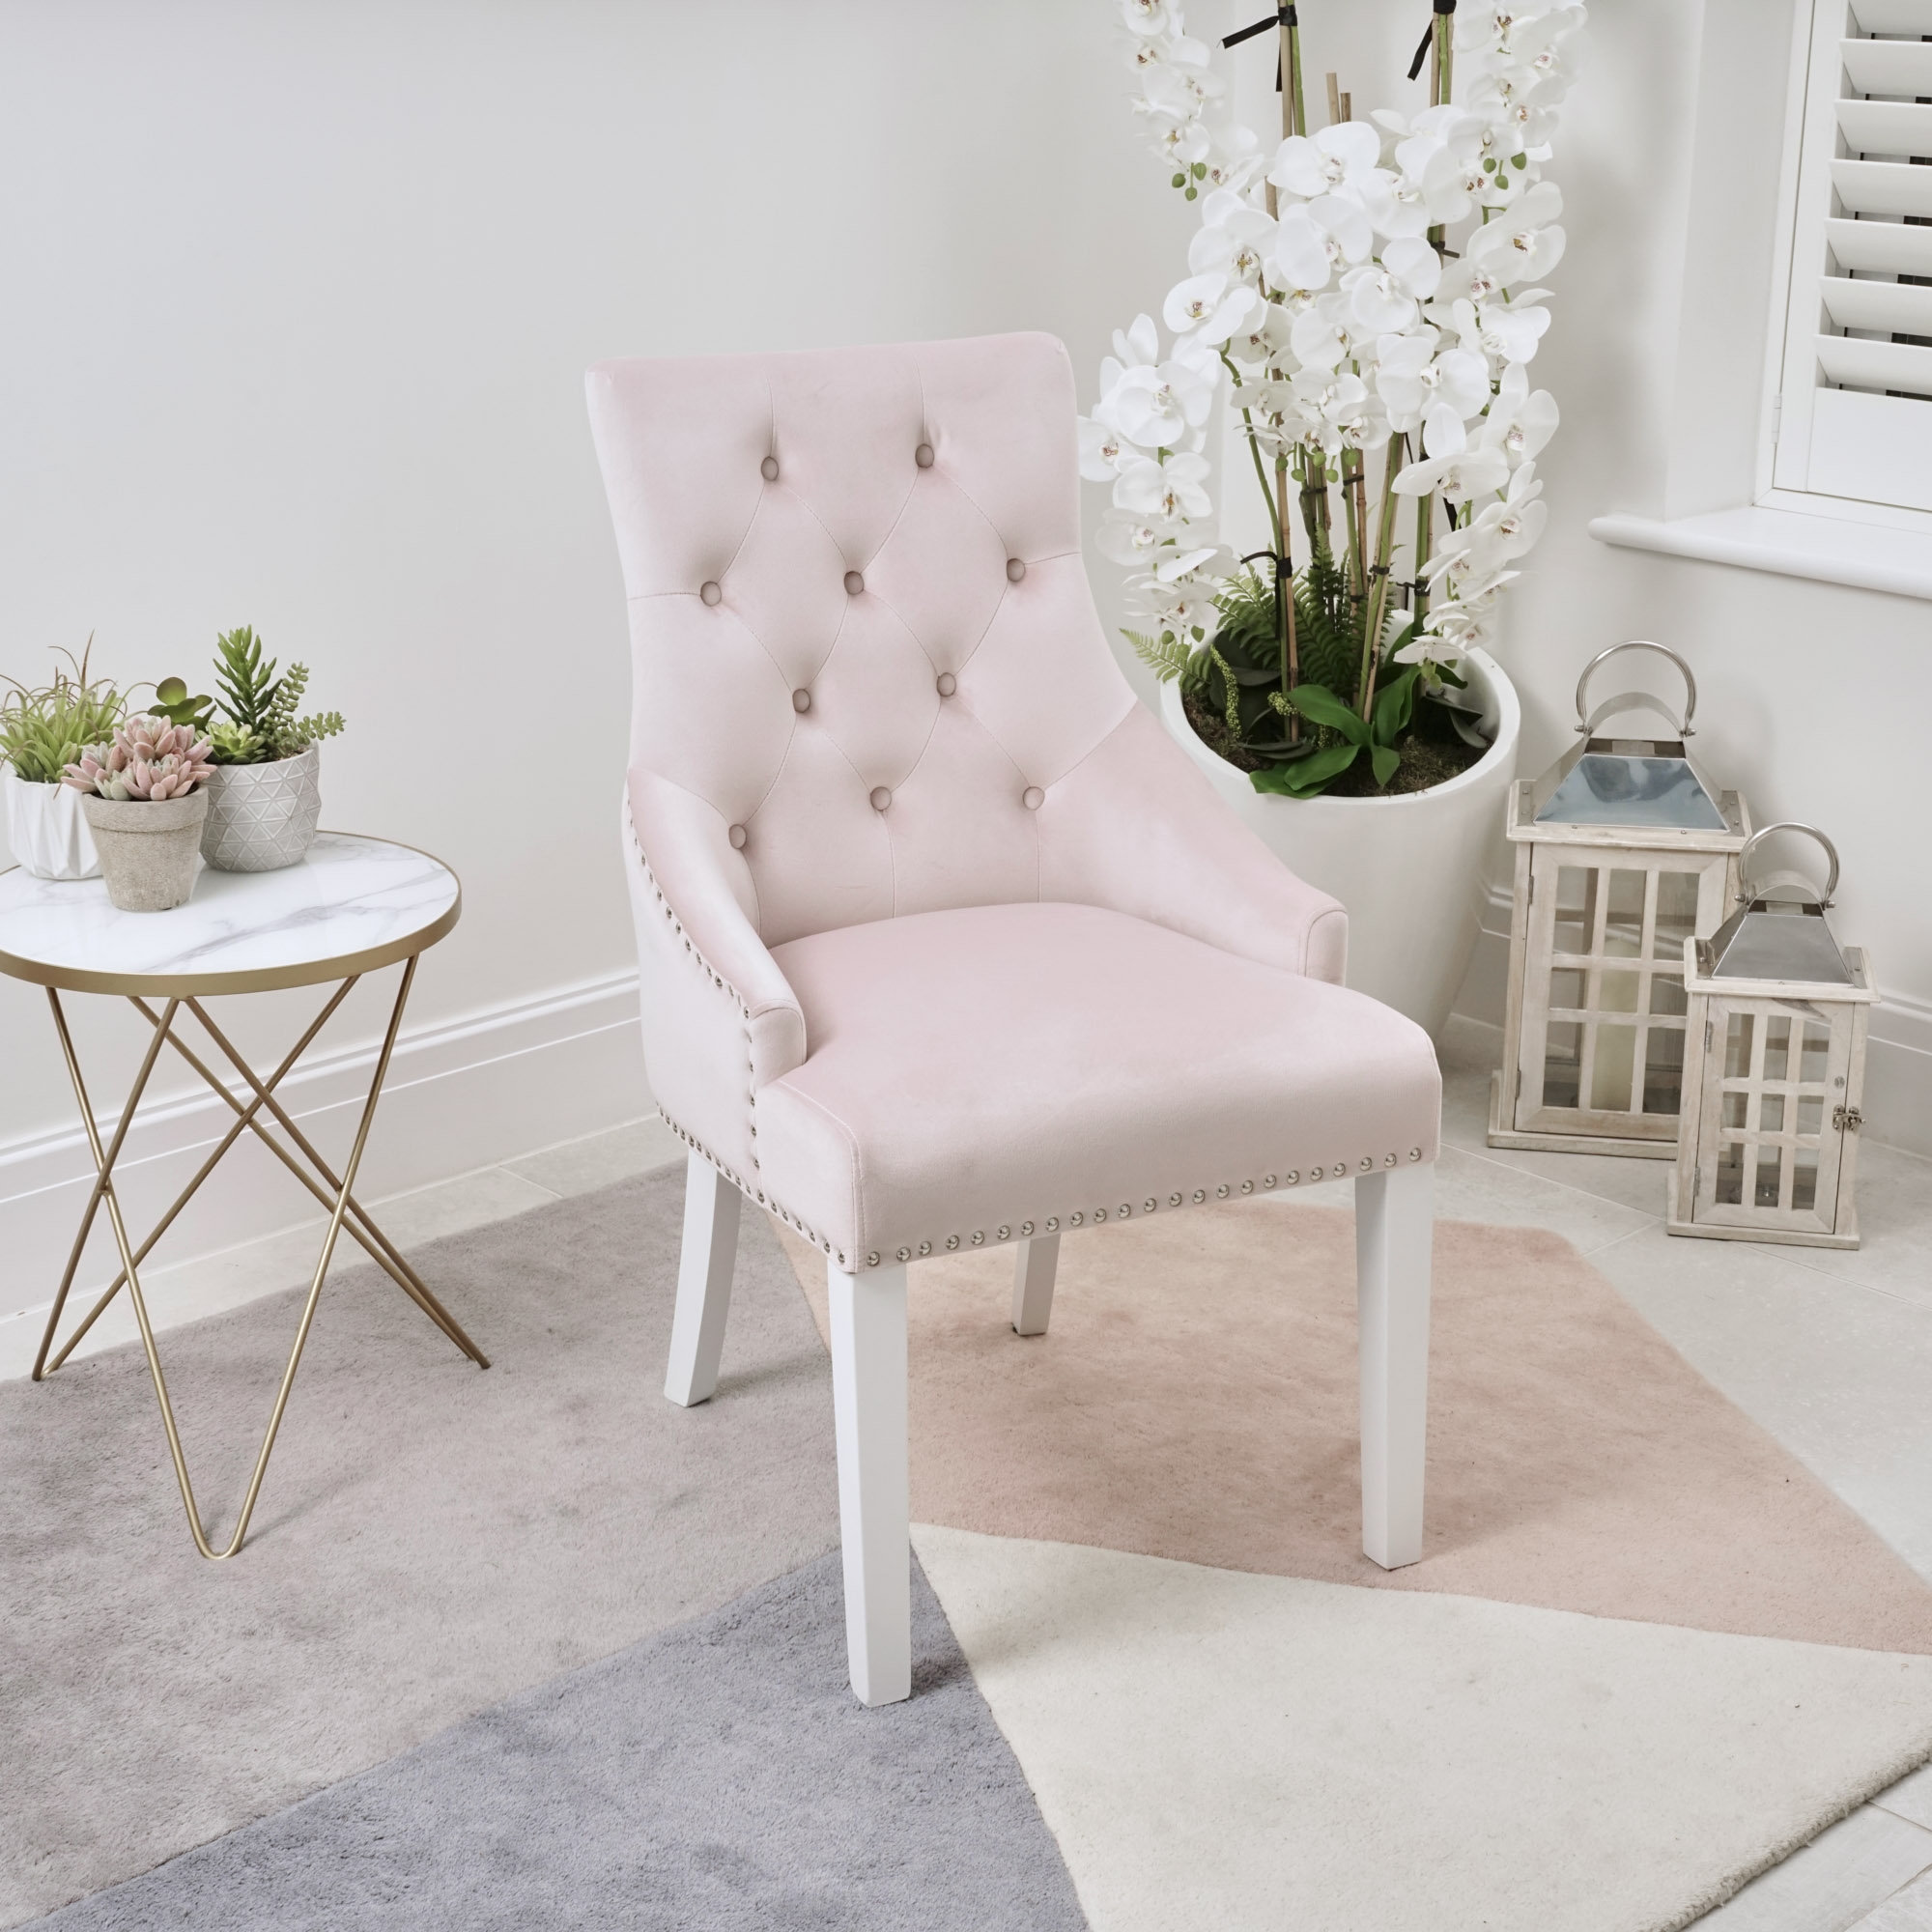 Chelsea Pink Brushed Velvet Upholstered Scoop Dining Chair – White Legs